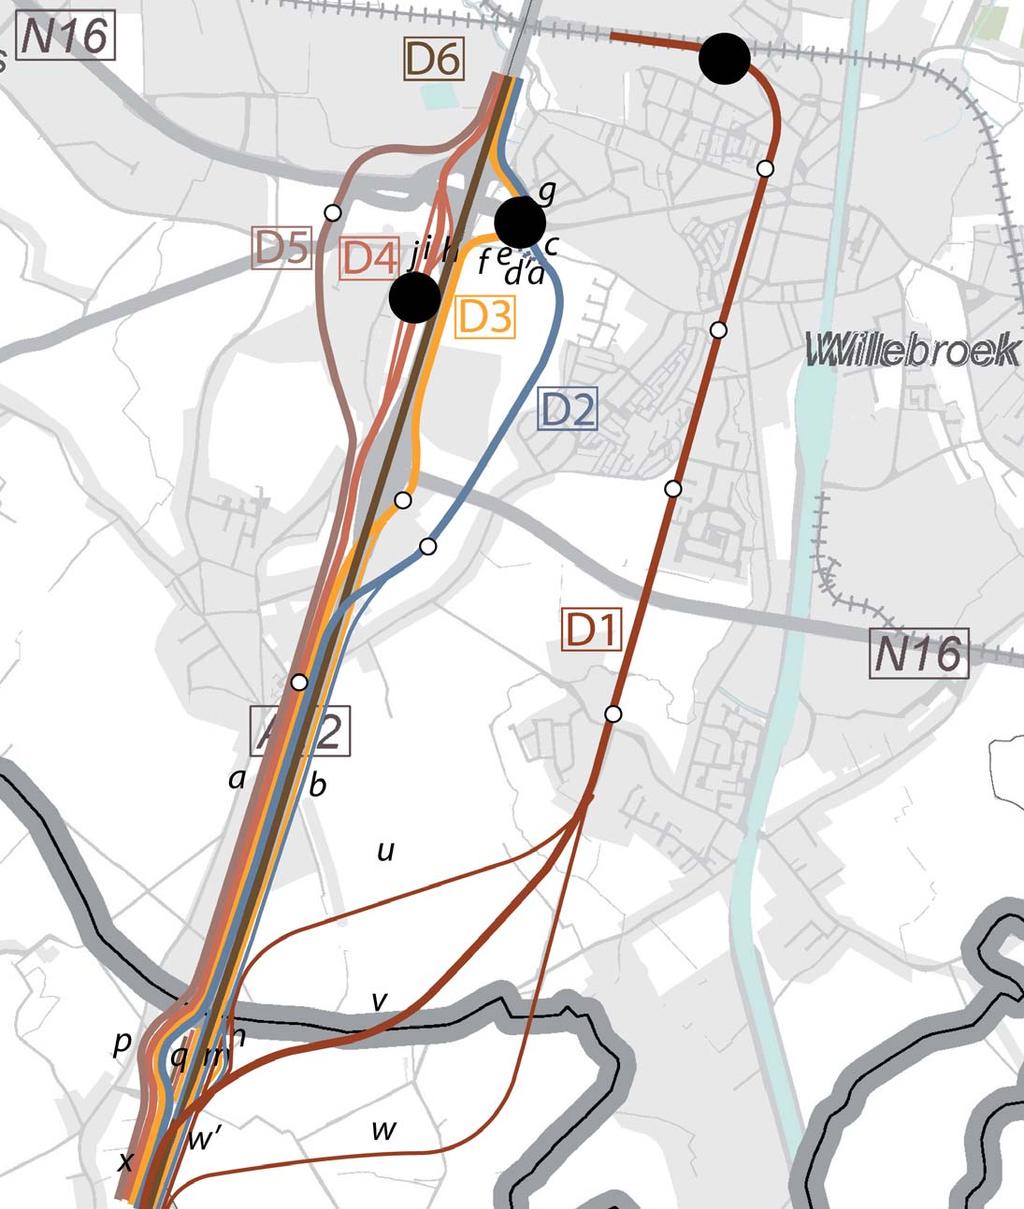 Titel: Onderzoek ruimtelijke inpassing: Overzicht deeltracé D Project: planmer tramlijn Boom - Brussel maart 2013 Opdrachtgever: